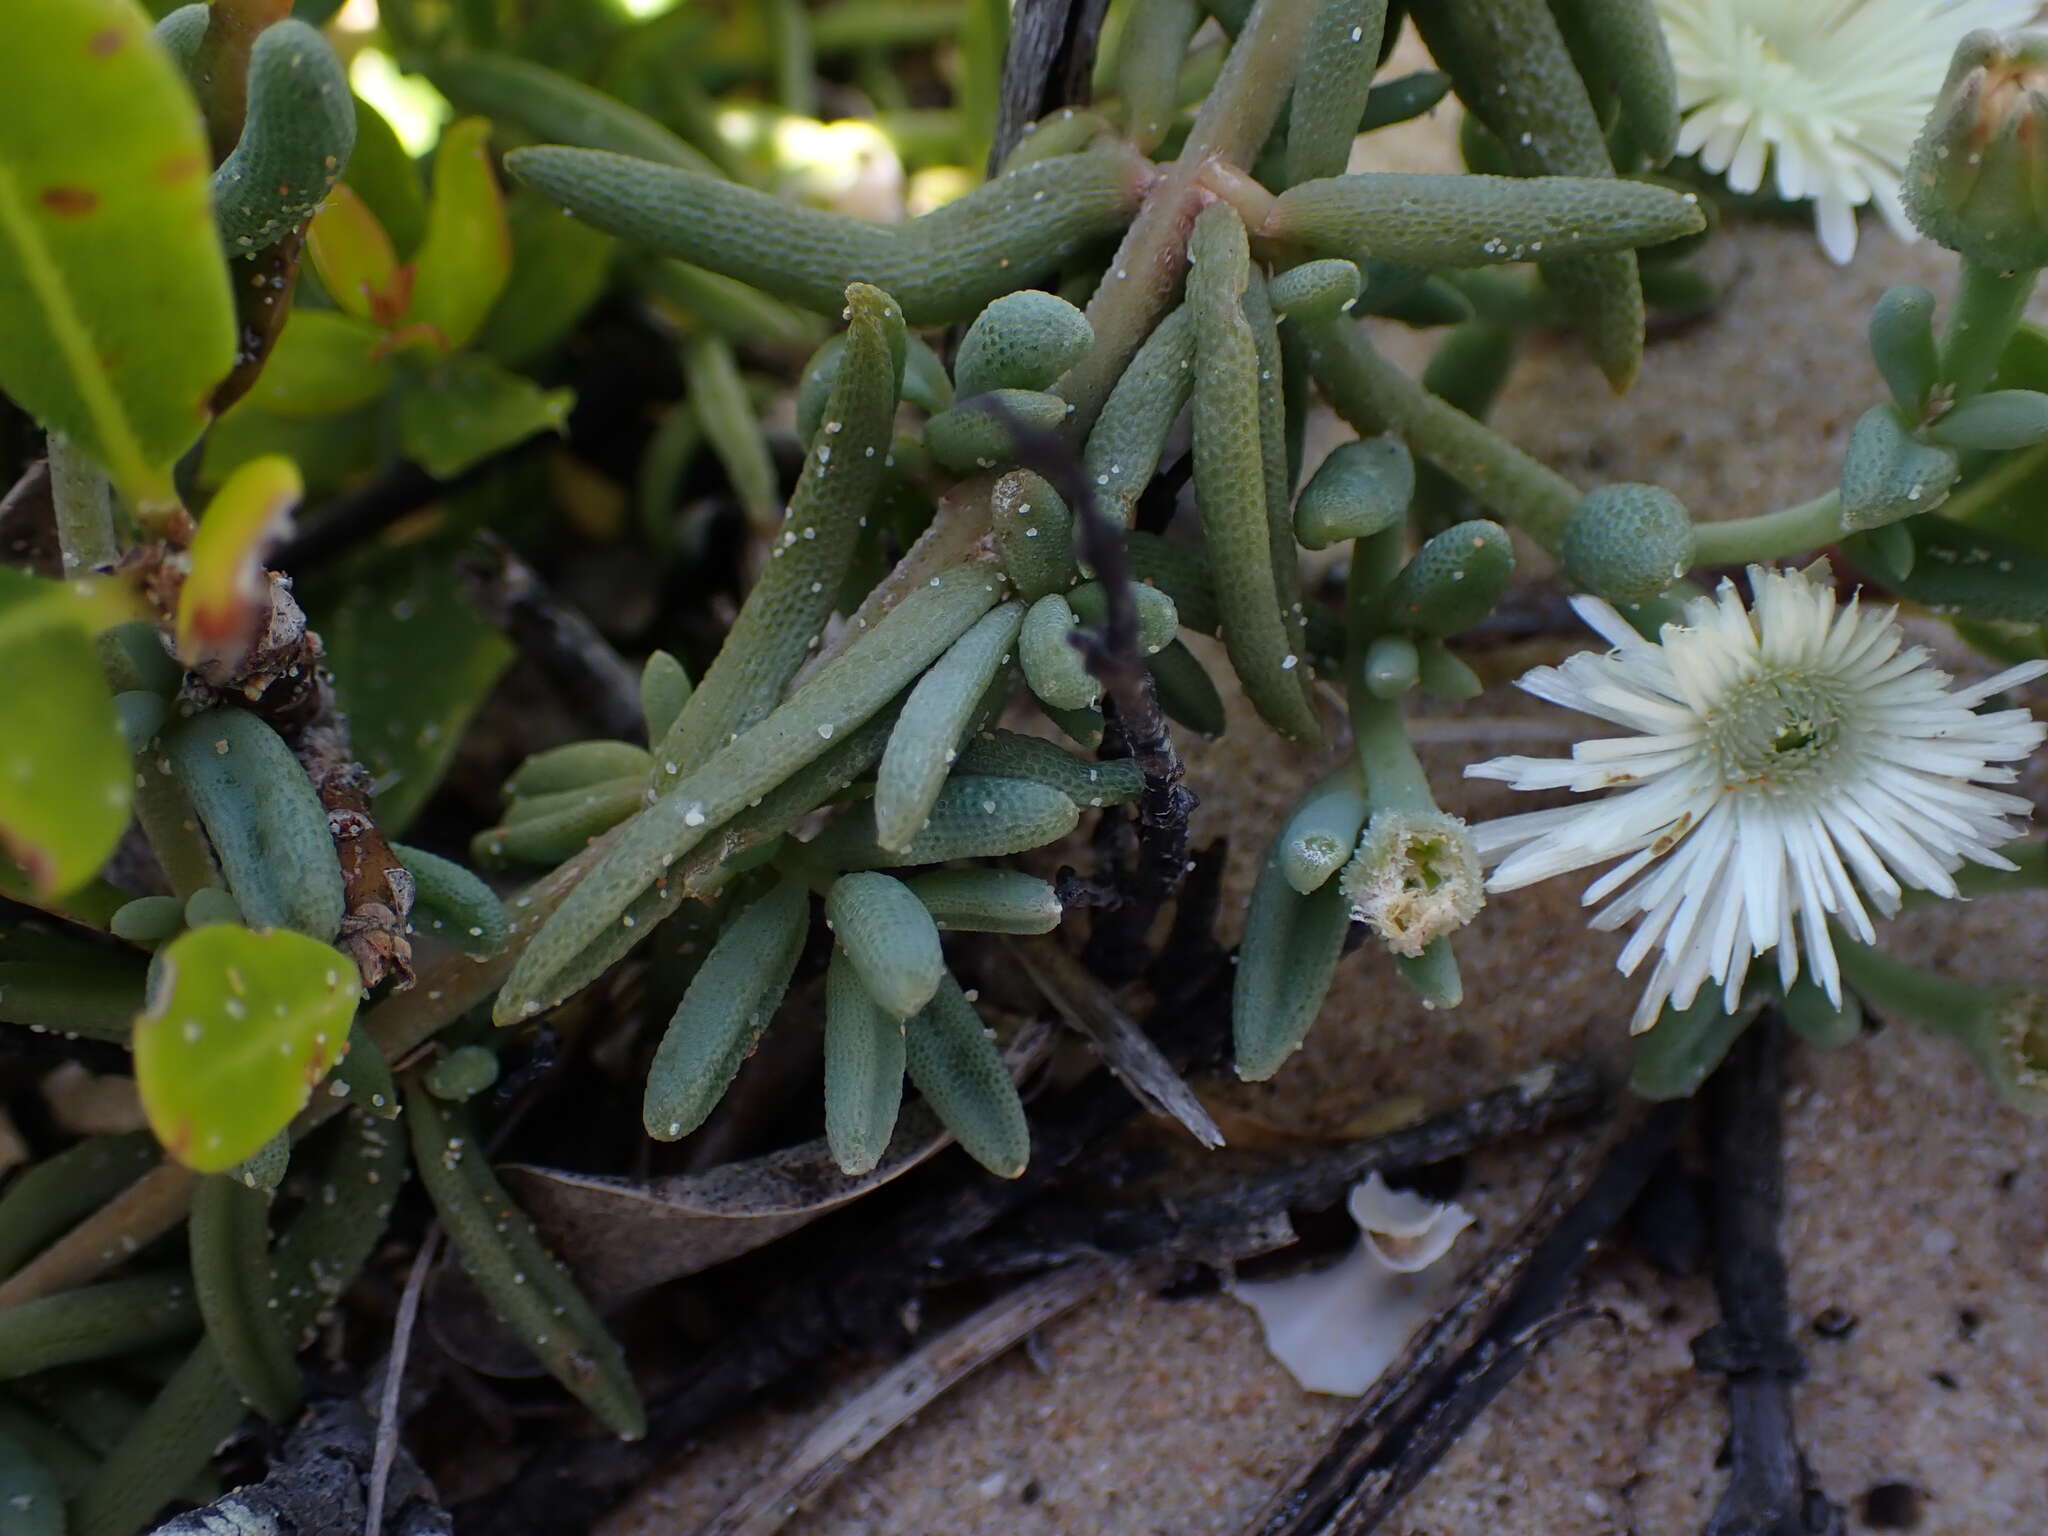 Image of Mesembryanthemum canaliculatum Haw.